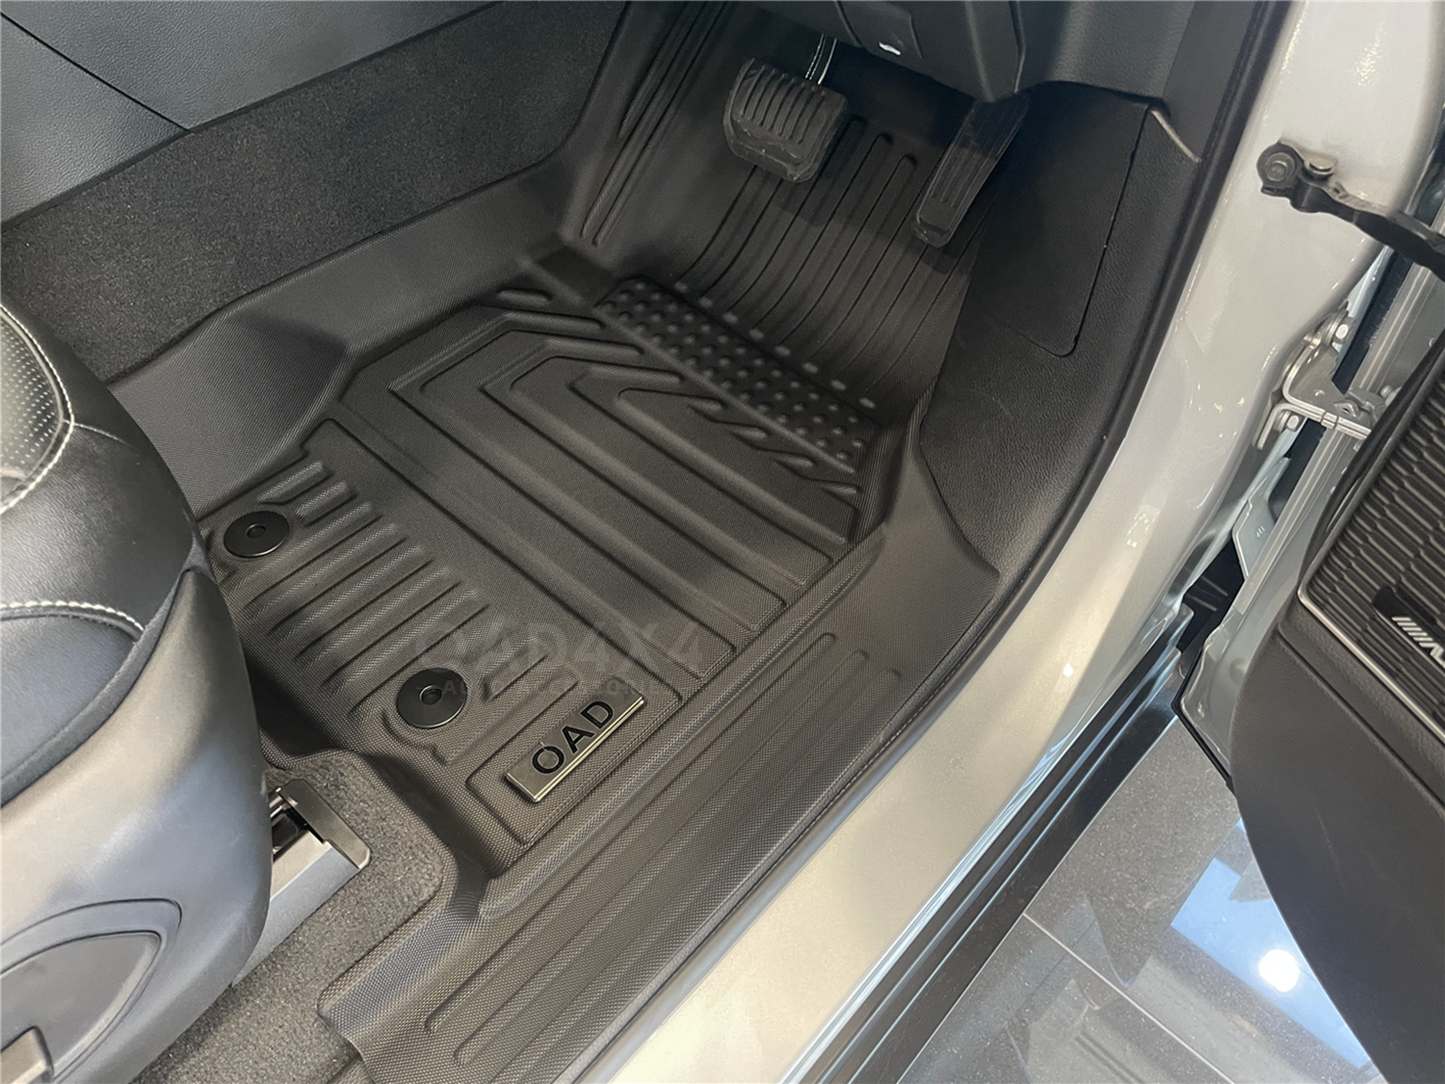 5D TPE Floor Mats & 3D Cargo Mat Boot Mat for Jeep Grand Cherokee 5 Seats 2021-Onwards Door Sill Covered